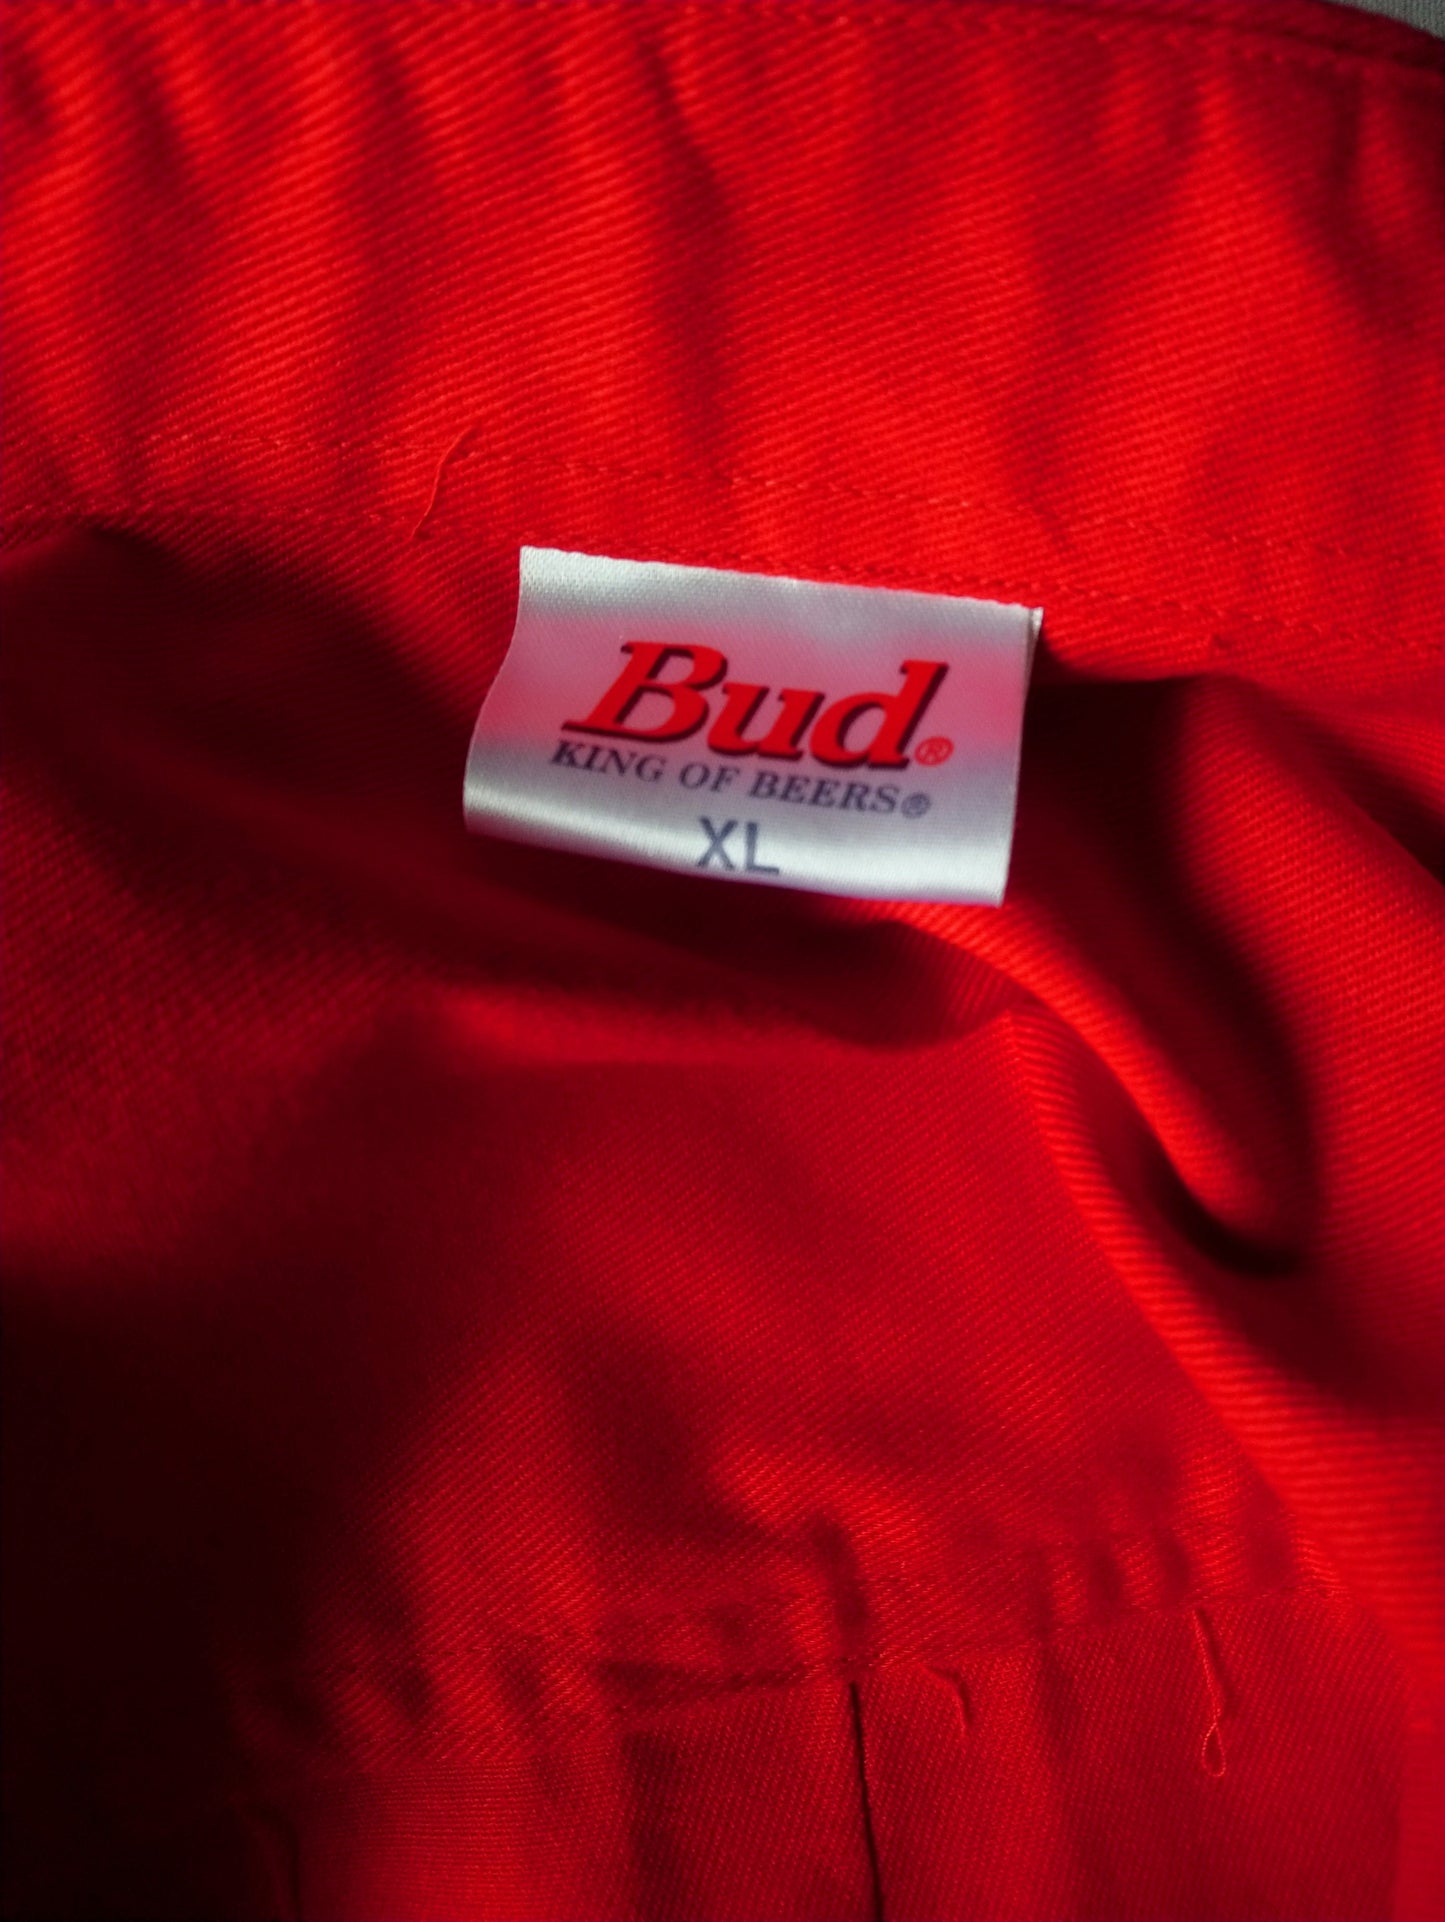 Bud / Budweiser "King of Beer" overhemd. Rood gekleurd. Maat XL. dikkere stof. Nieuw!!